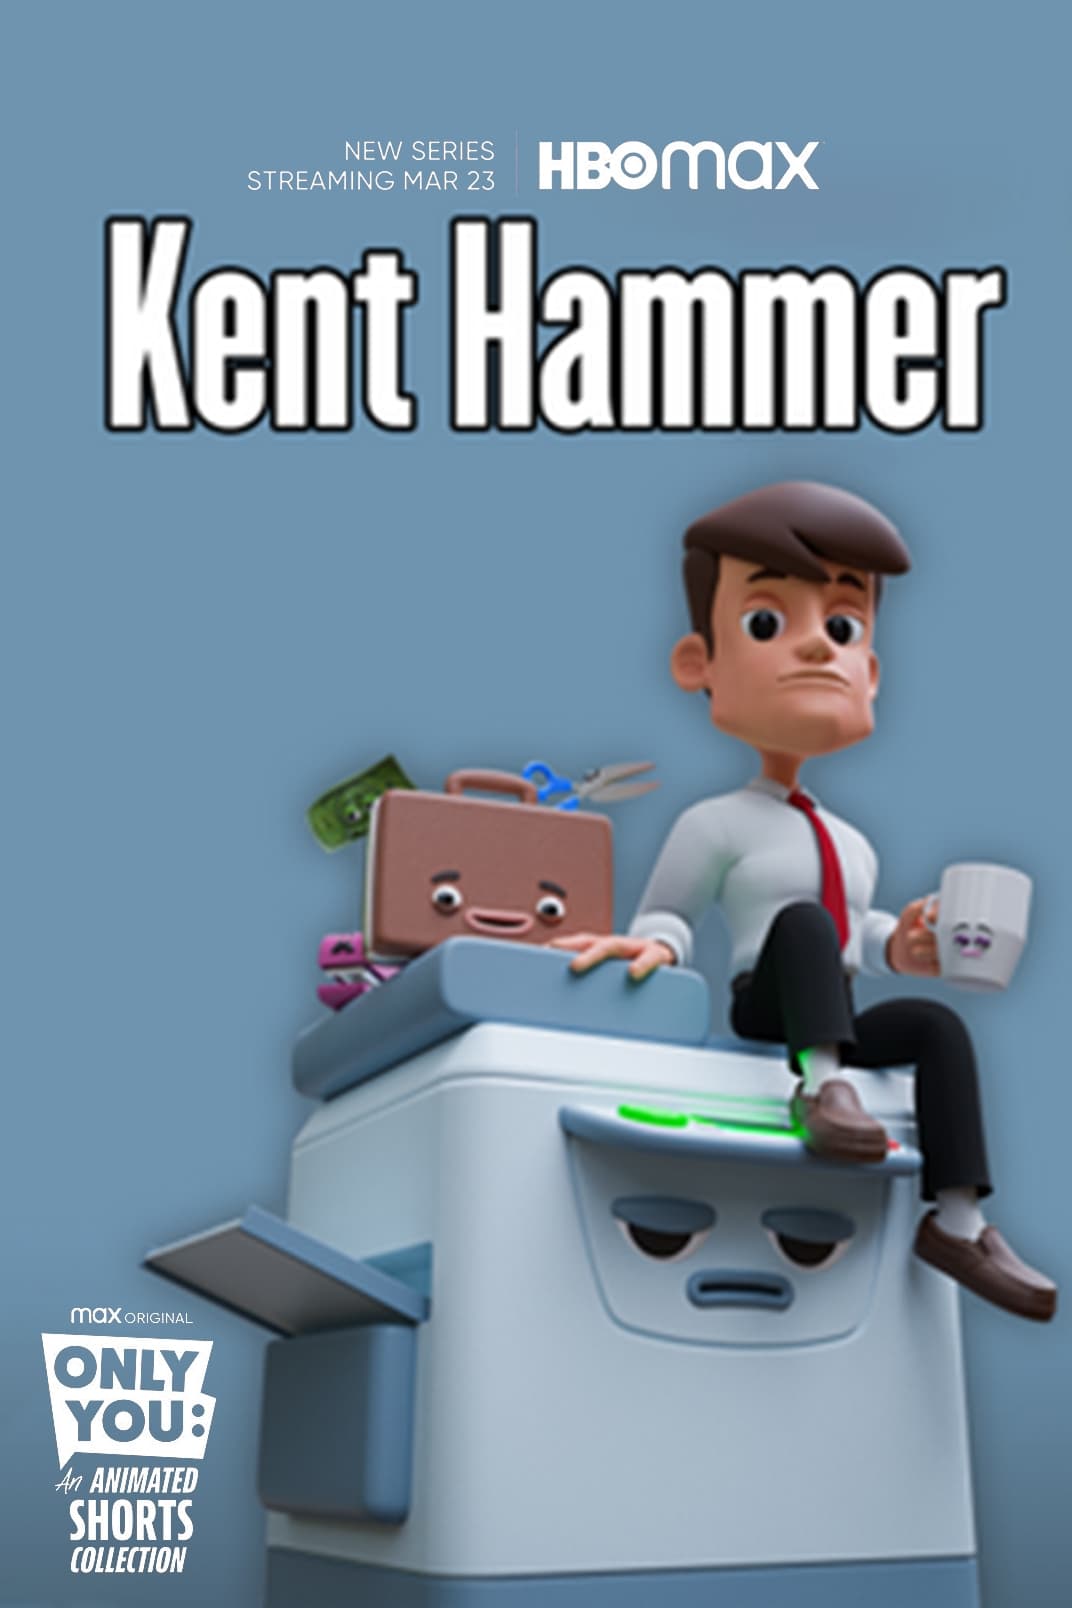 Kent Hammer